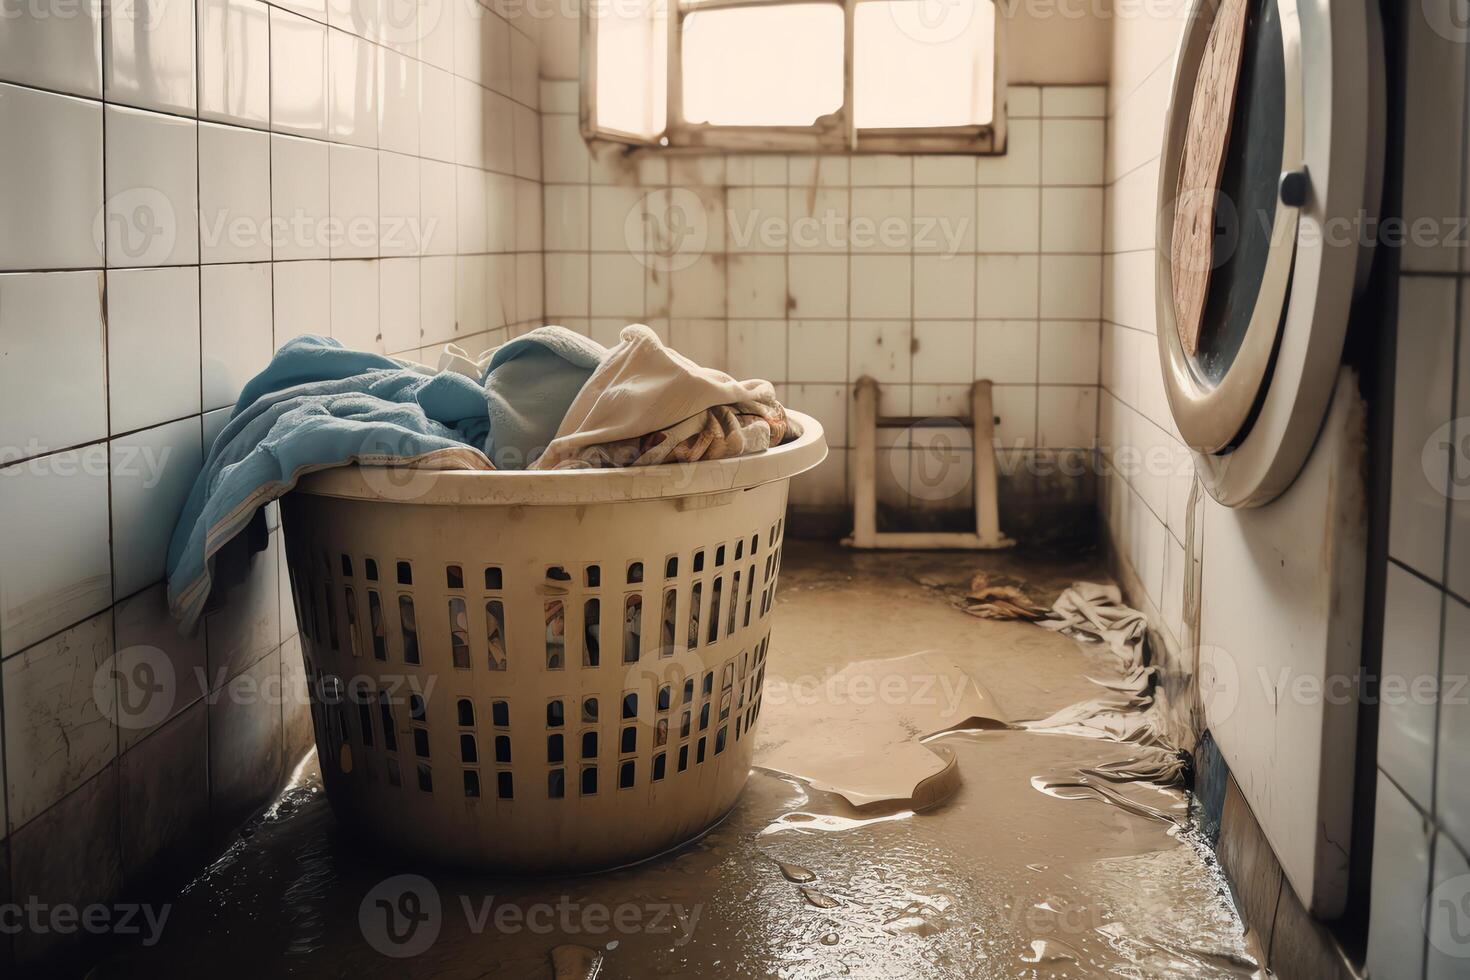 lavaggio macchina nel un vecchio miserabile sporco cadente bagno seminterrato o lavanderia camera allagato dopo un' acqua danno perdita o naturale alluvione disastro con ostacolare e biancheria. ai generato foto